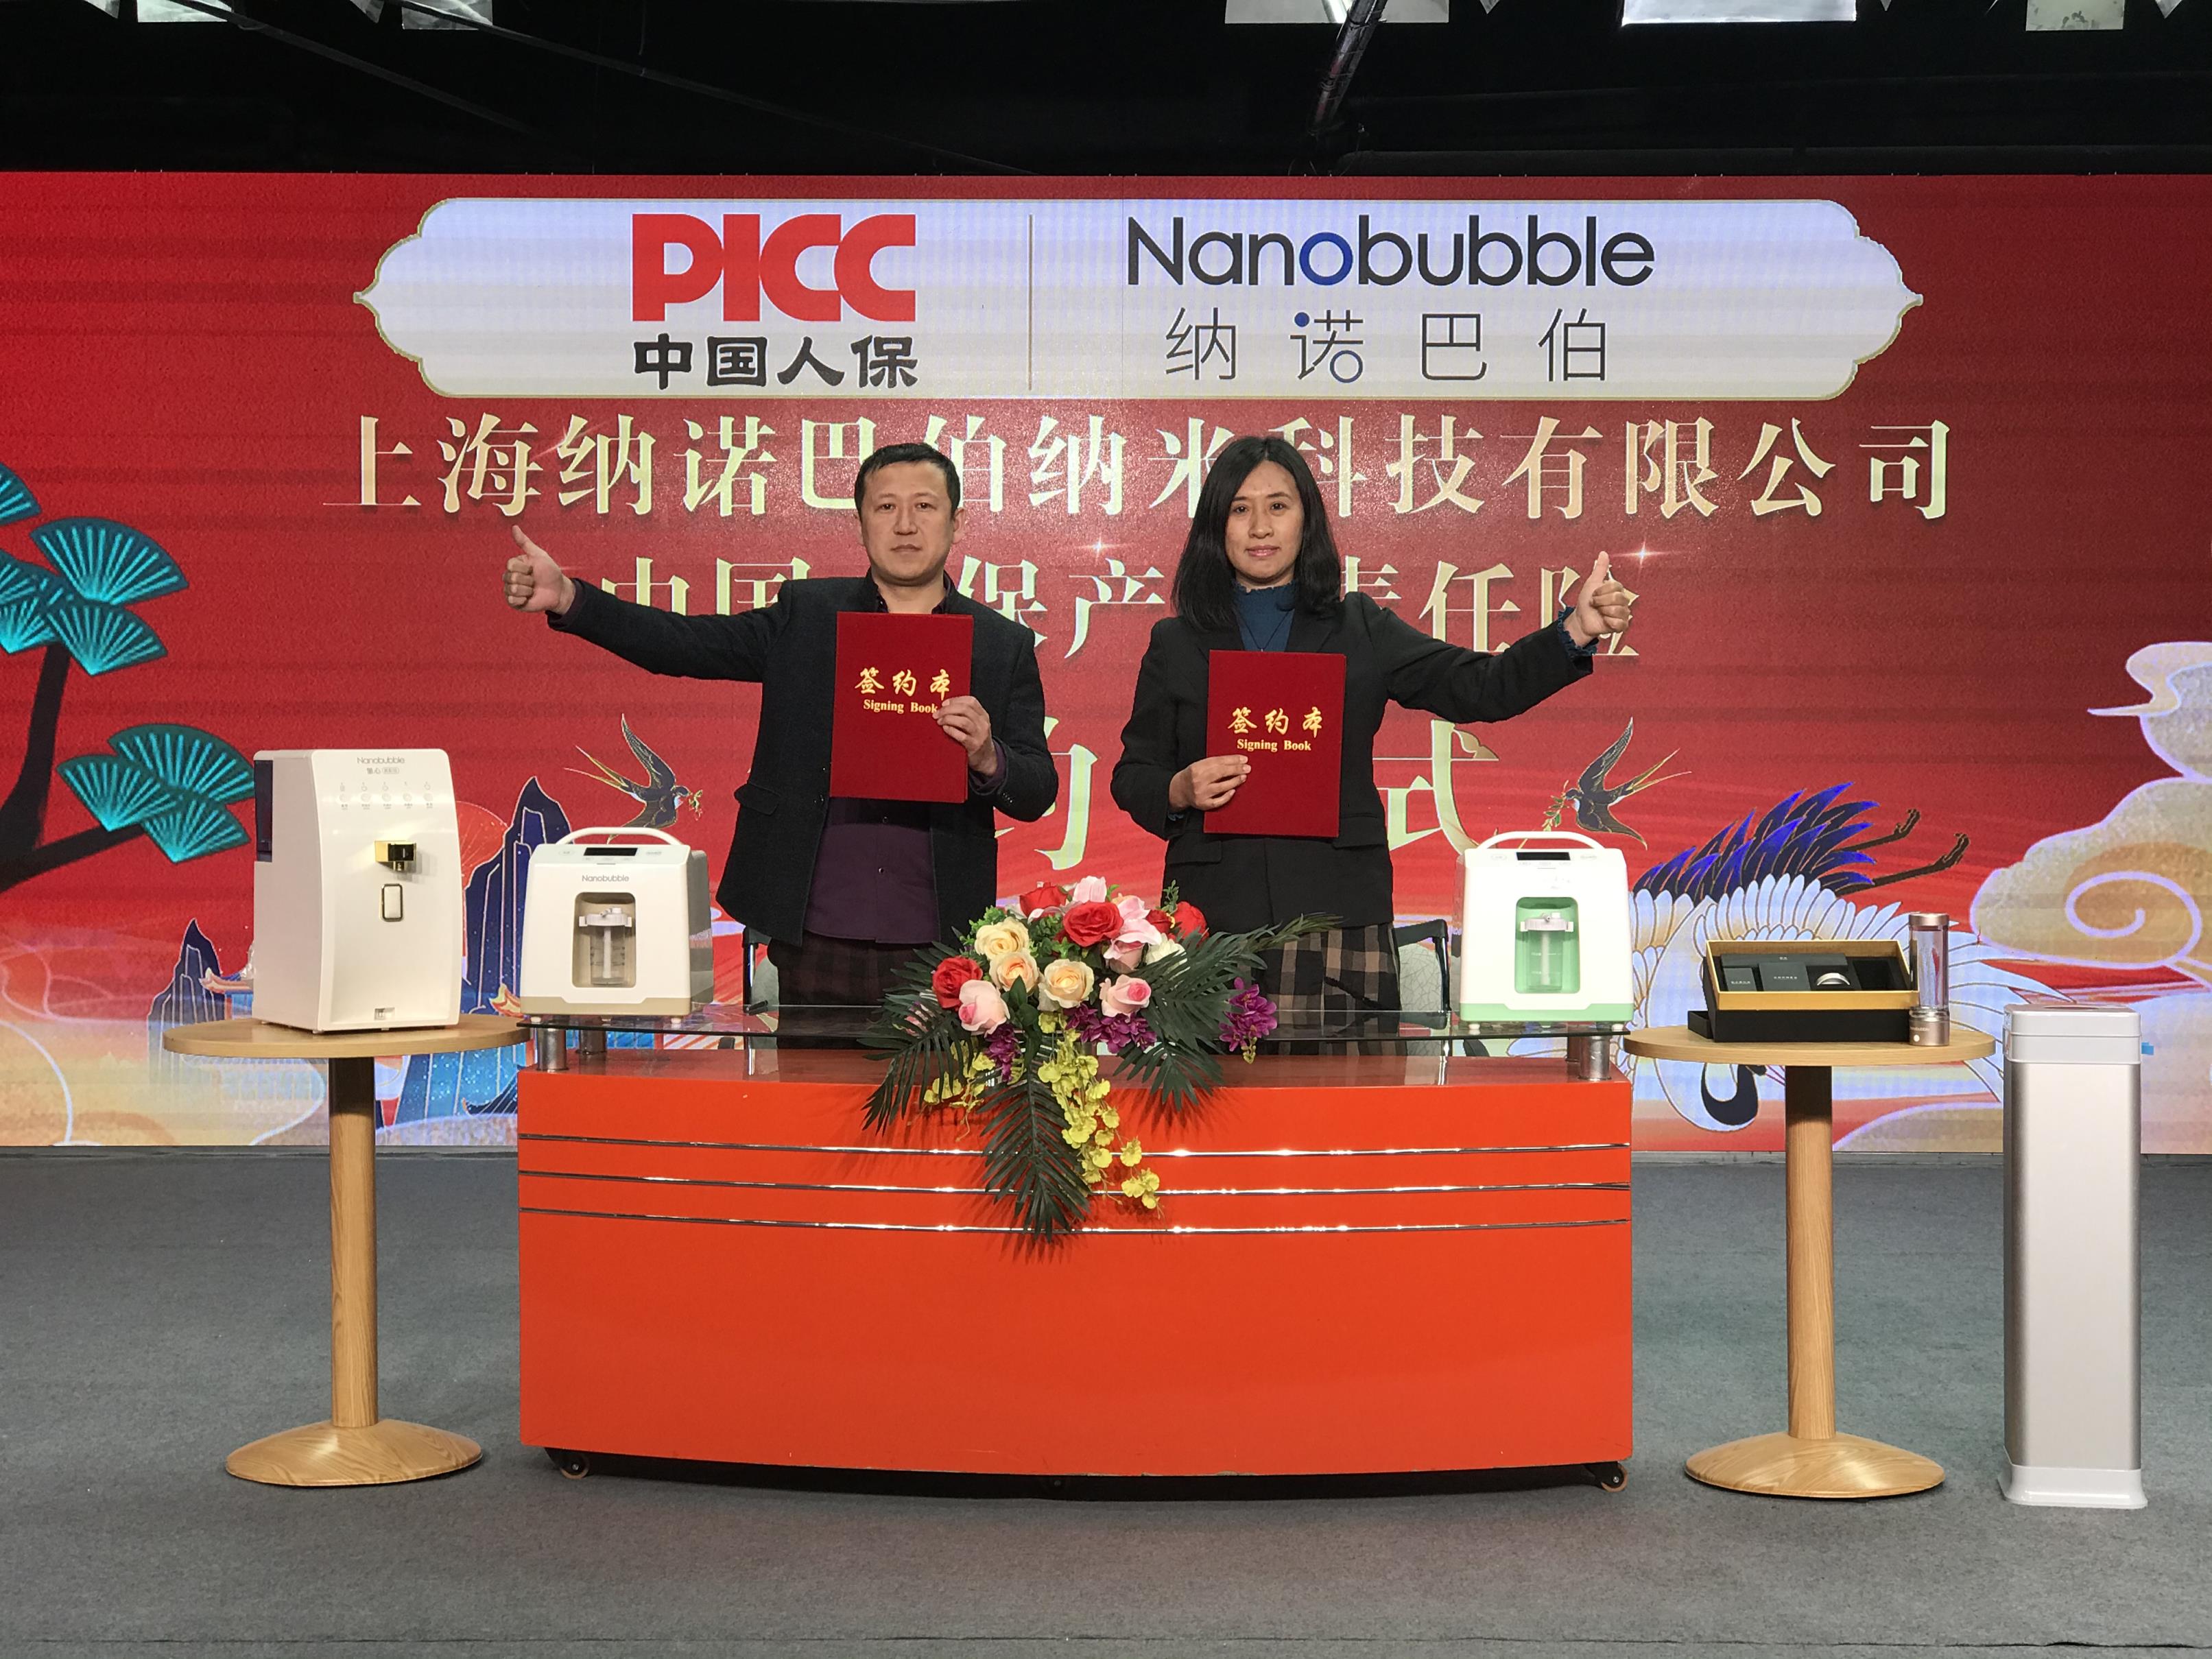 【责任企业】中国人保(PICC)为上海纳诺巴伯承保产品责任险，签约仪式圆满举行！